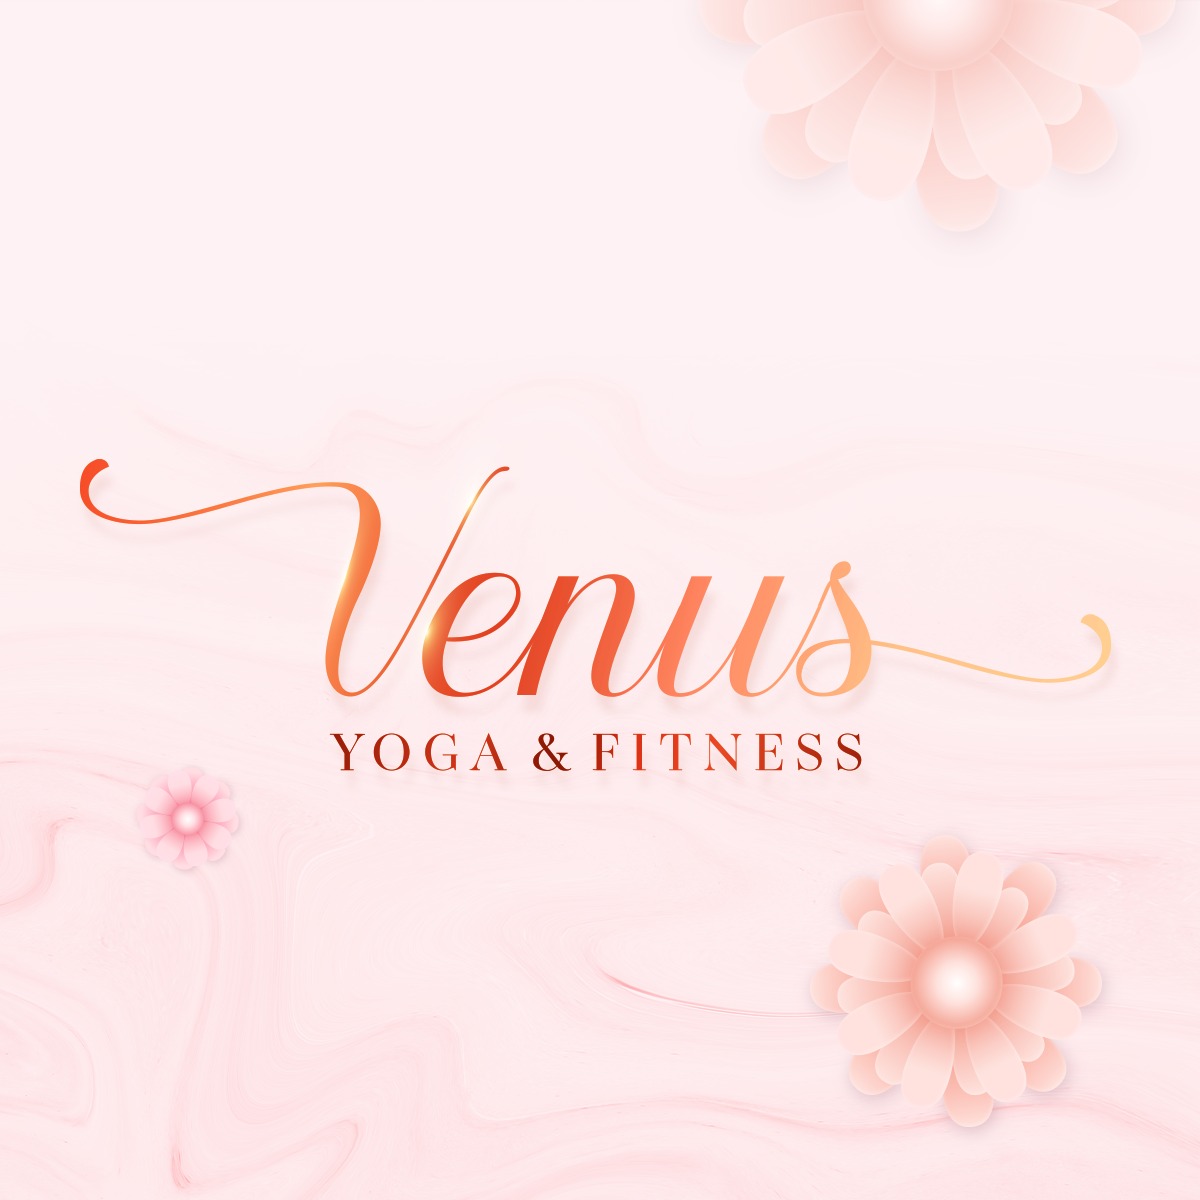 Venus Yoga & Fitness